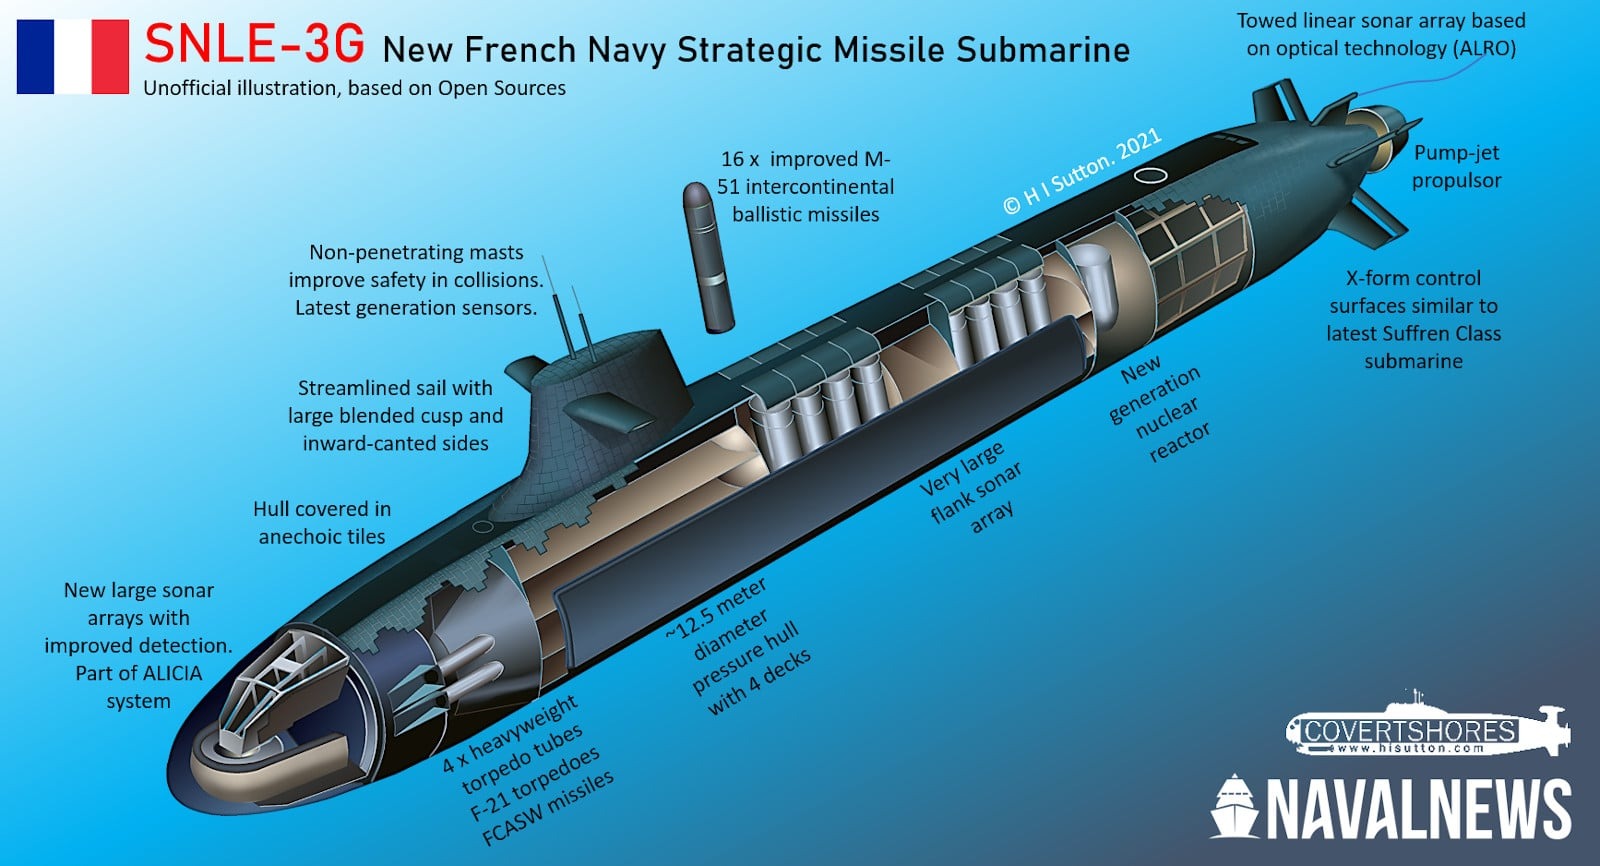 Fransa, yeni nesil nükleer denizaltı projesi SNLE-3G için ilk çeliği kesti